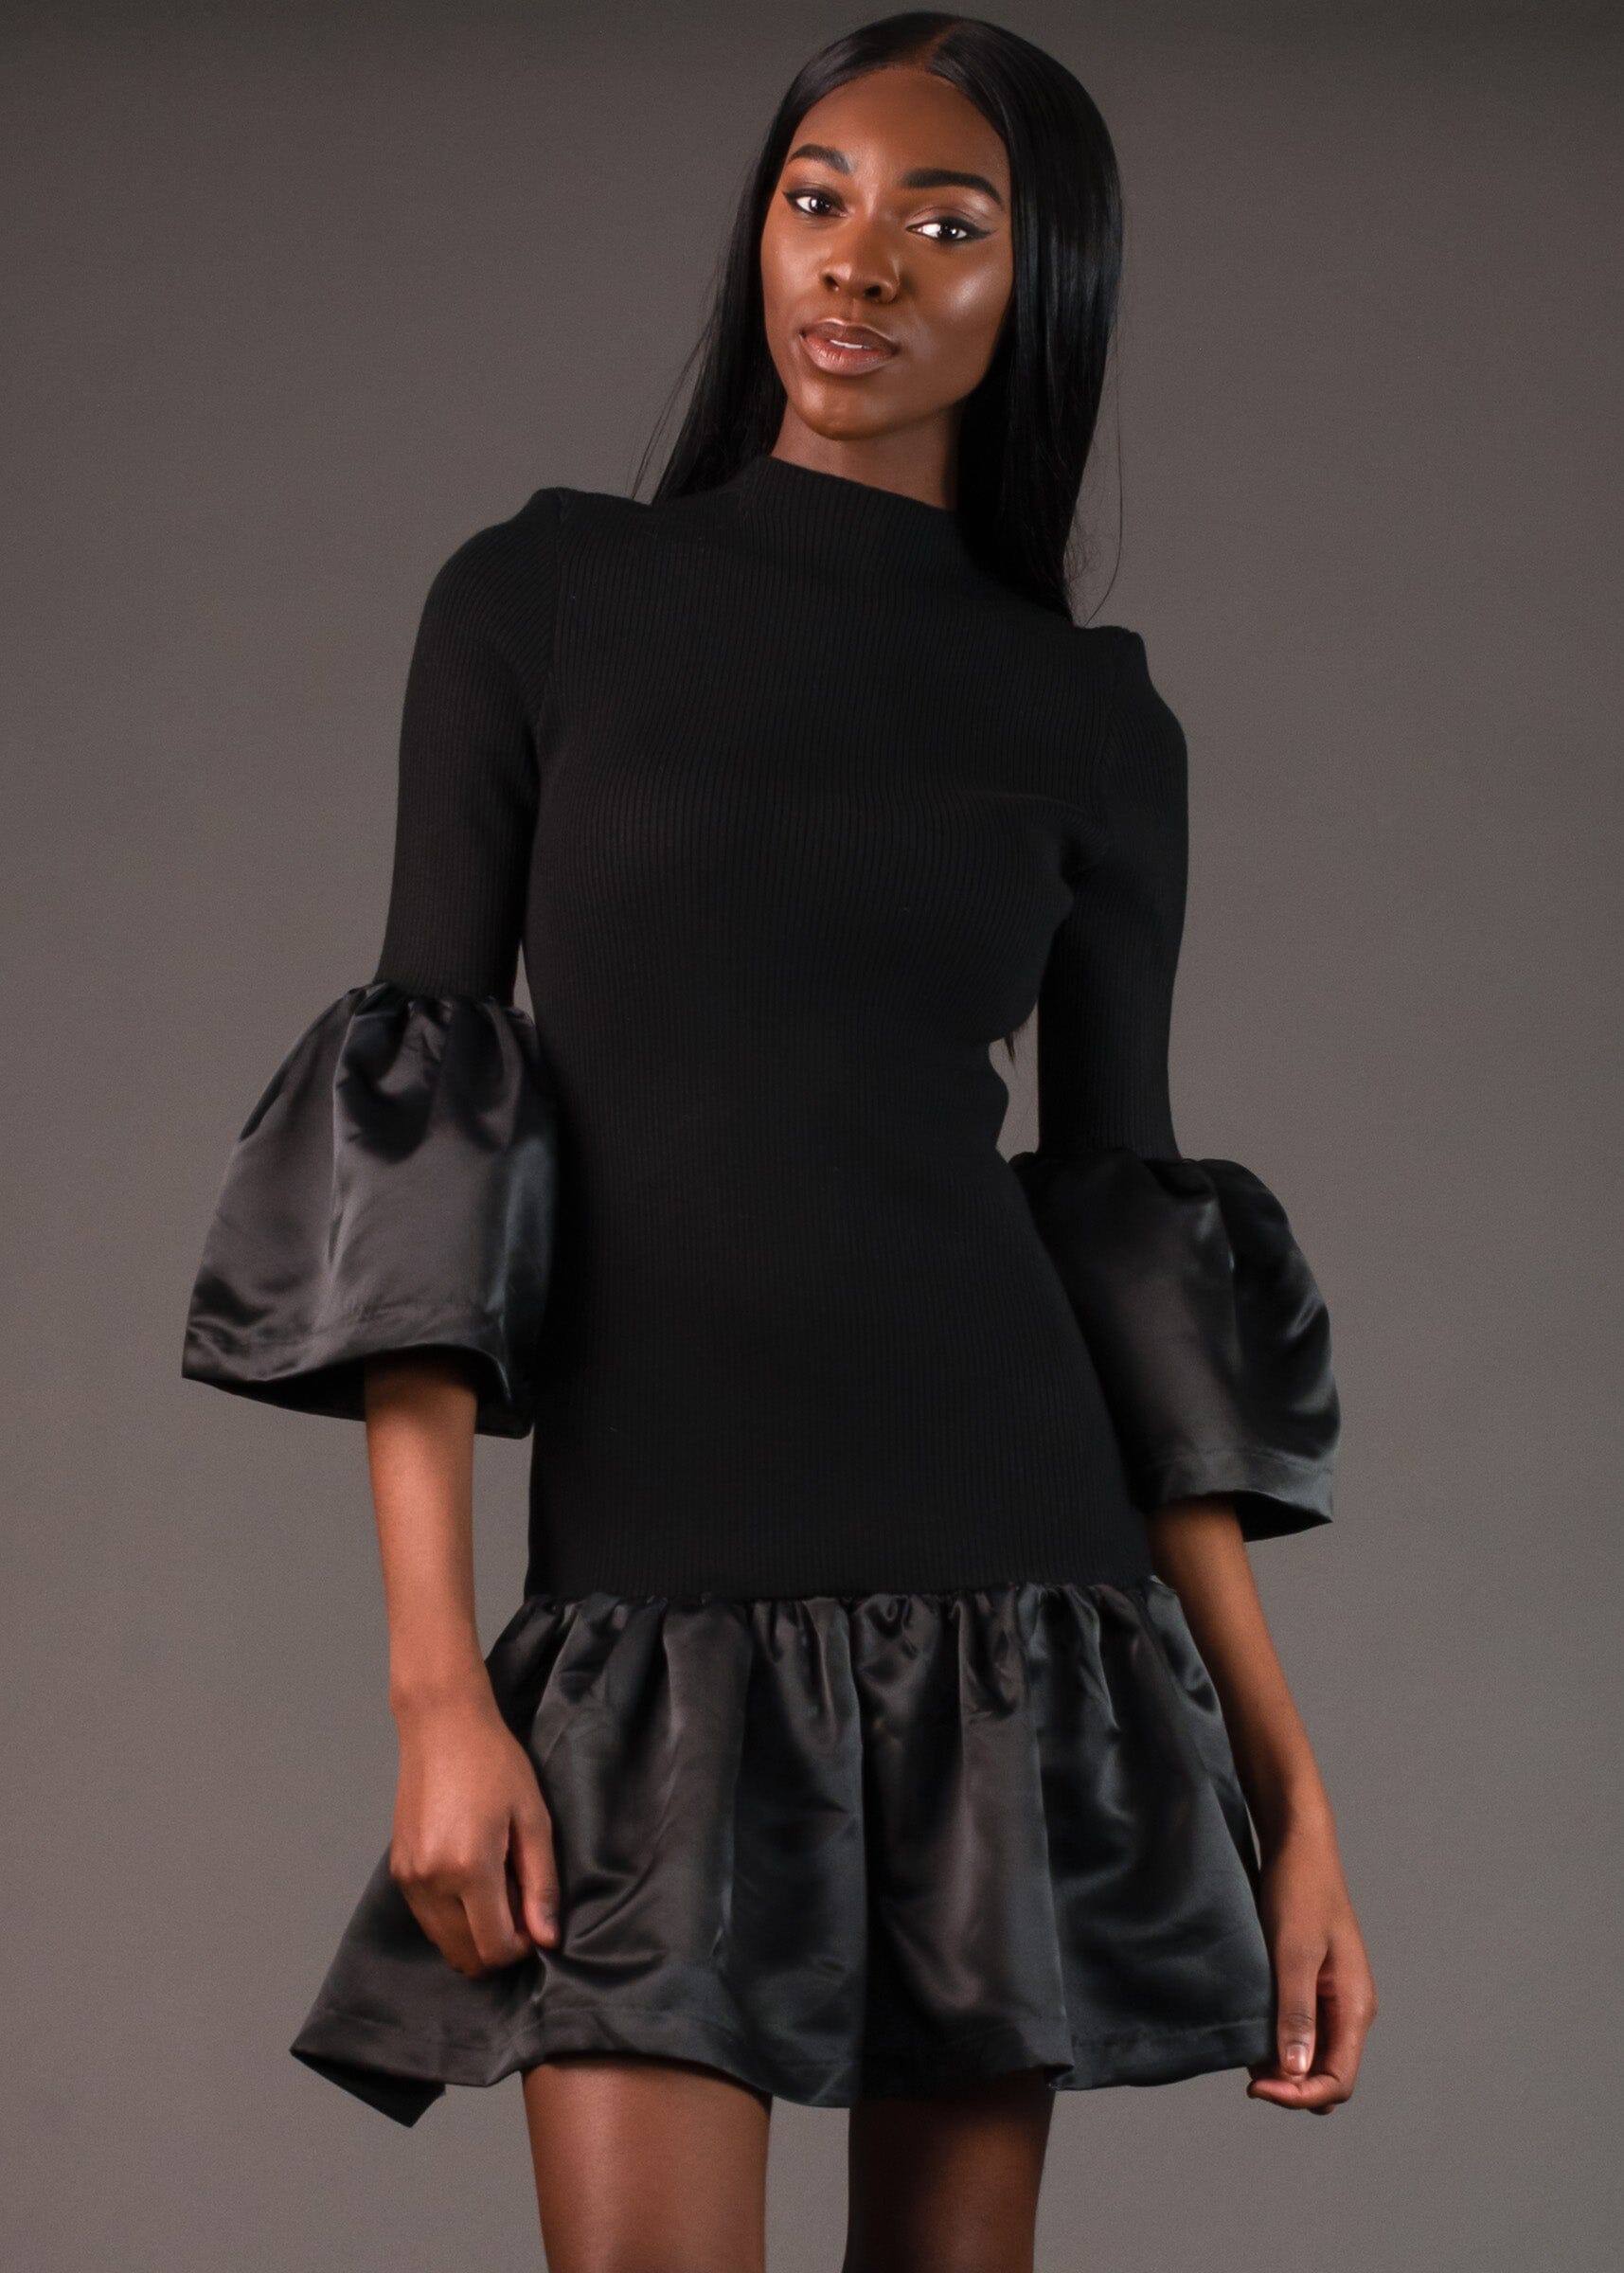 Peplum Knit Dress Dresses Kate Hewko Black S 